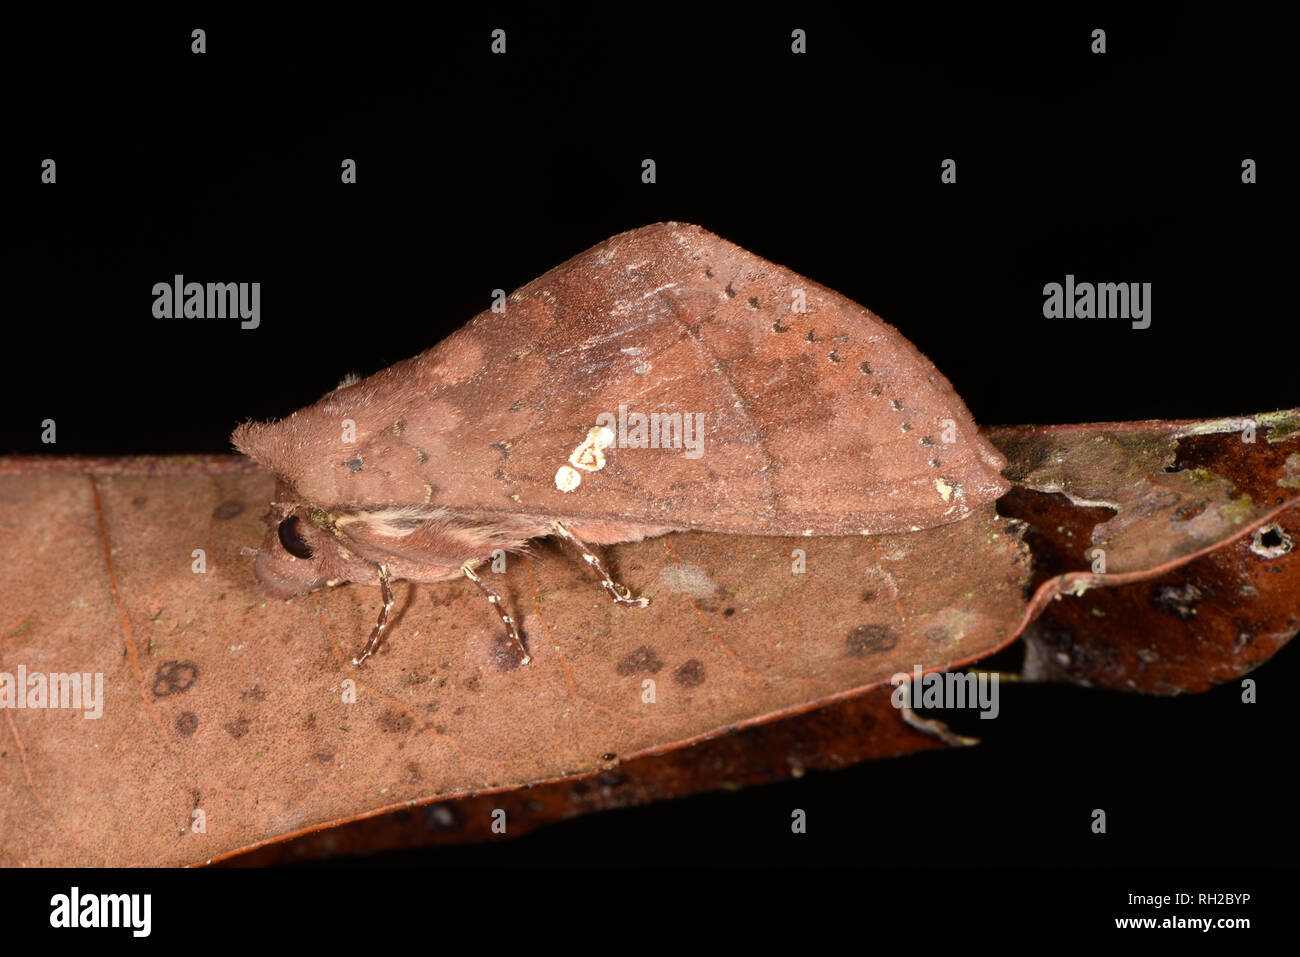 Costa Rica Moth (Hapigia simplex) adult at rest on dead leaf, Turrialba, Costa Rica, October Stock Photo